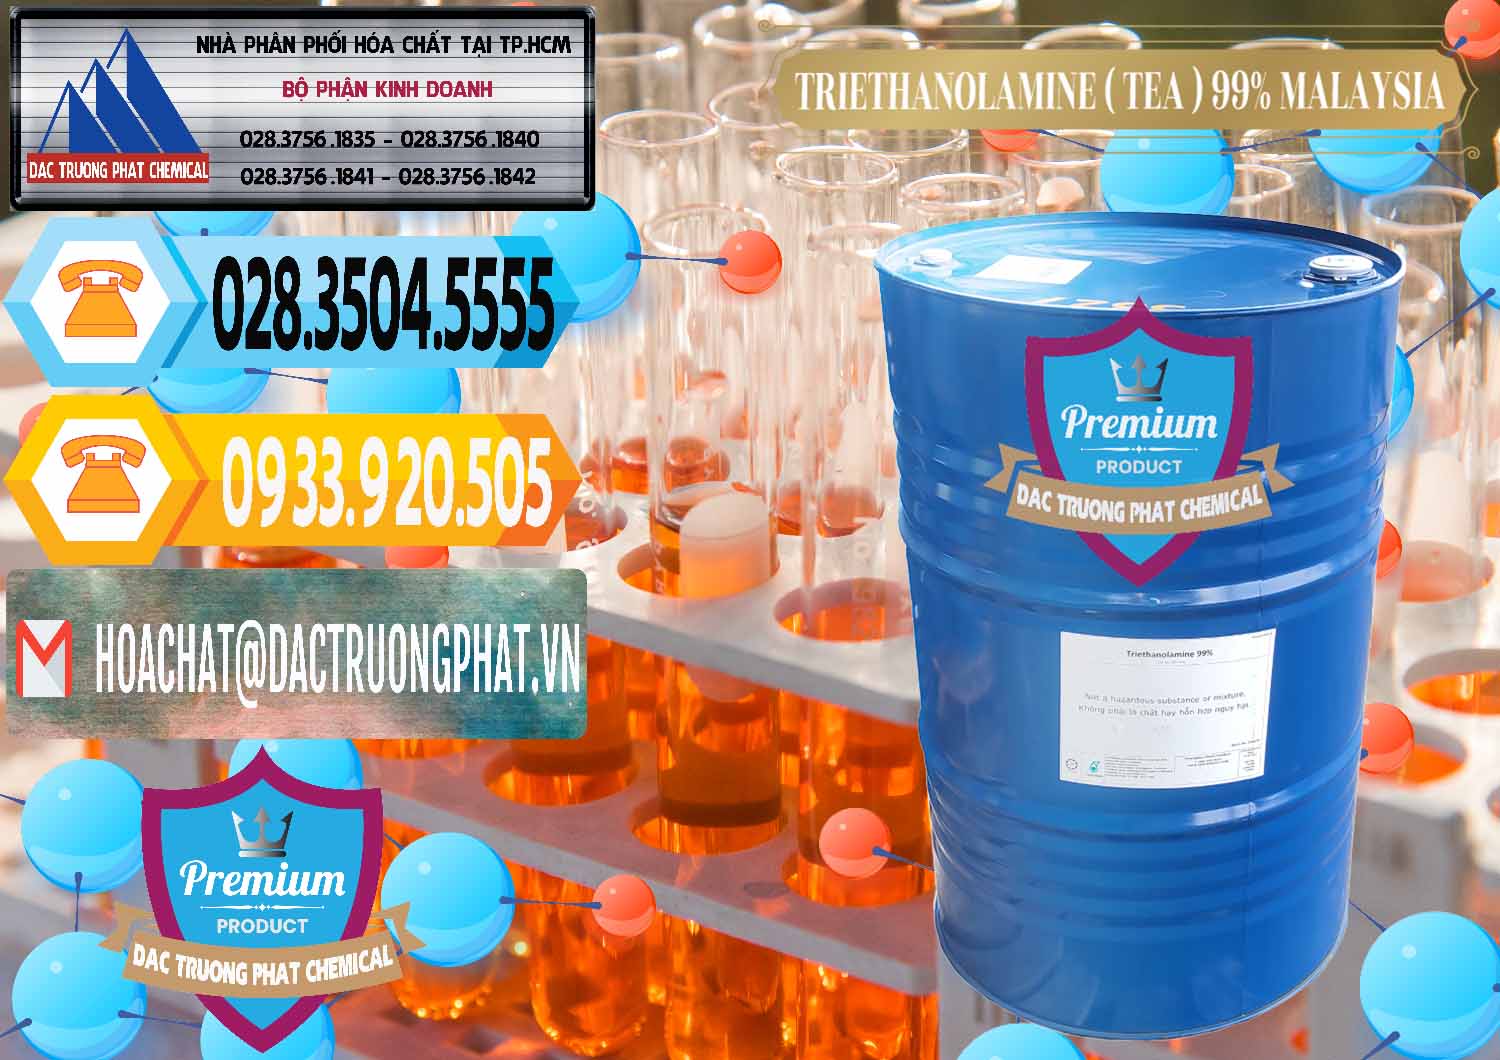 Công ty chuyên cung cấp ( bán ) TEA - Triethanolamine 99% Mã Lai Malaysia - 0323 - Nơi cung ứng _ phân phối hóa chất tại TP.HCM - hoachattayrua.net